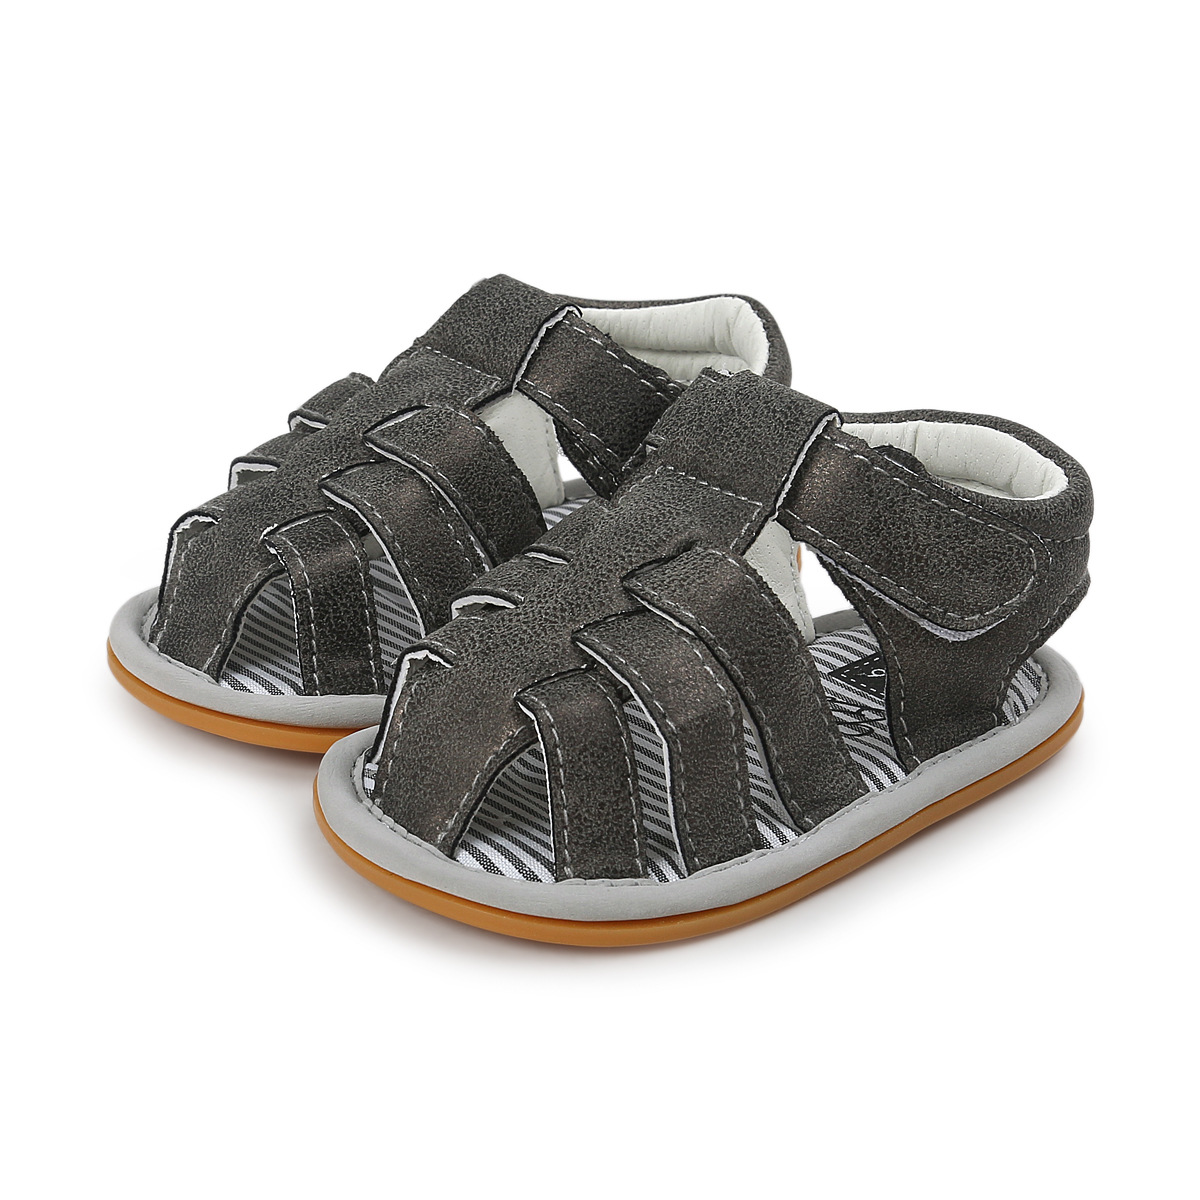 Chaussures bébé en Cuir synthétique - Ref 3436802 Image 42